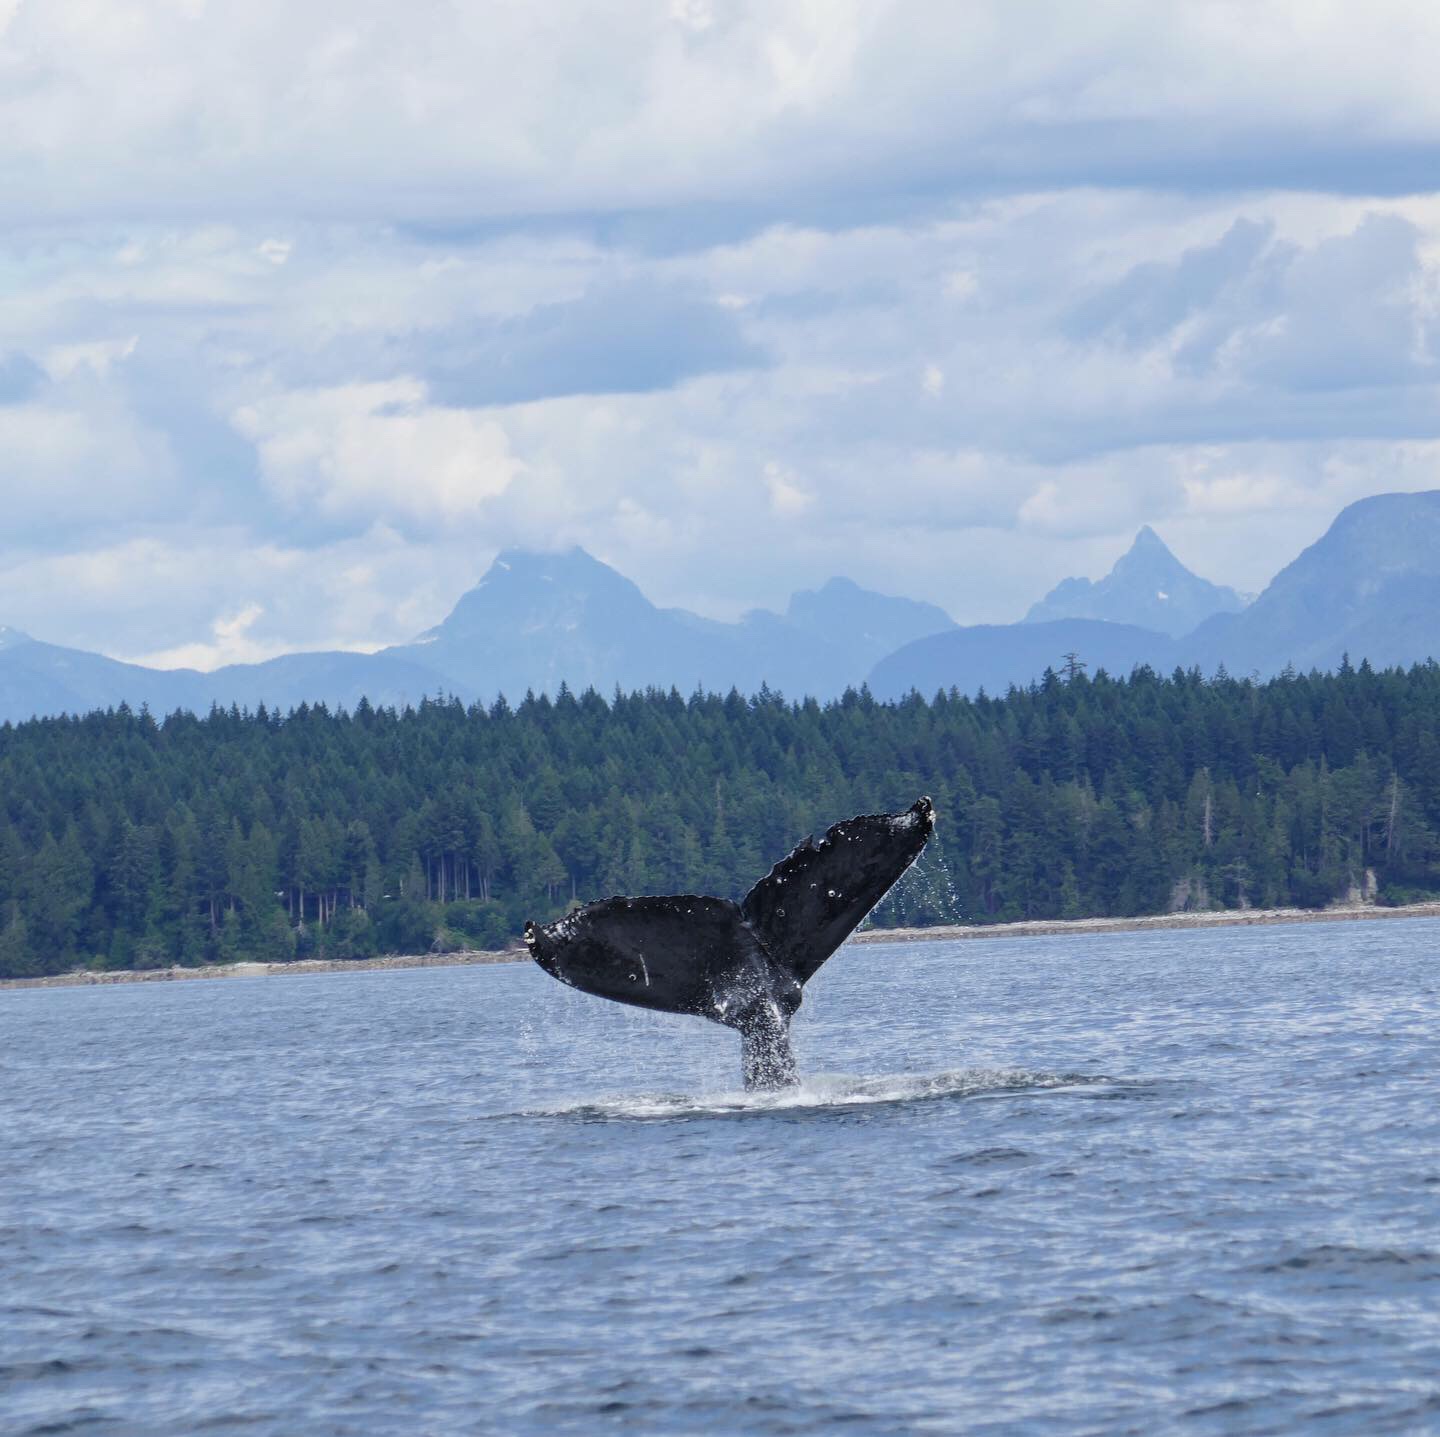   Humpback Whale, Salish Sea, British Columbia, Canada.  